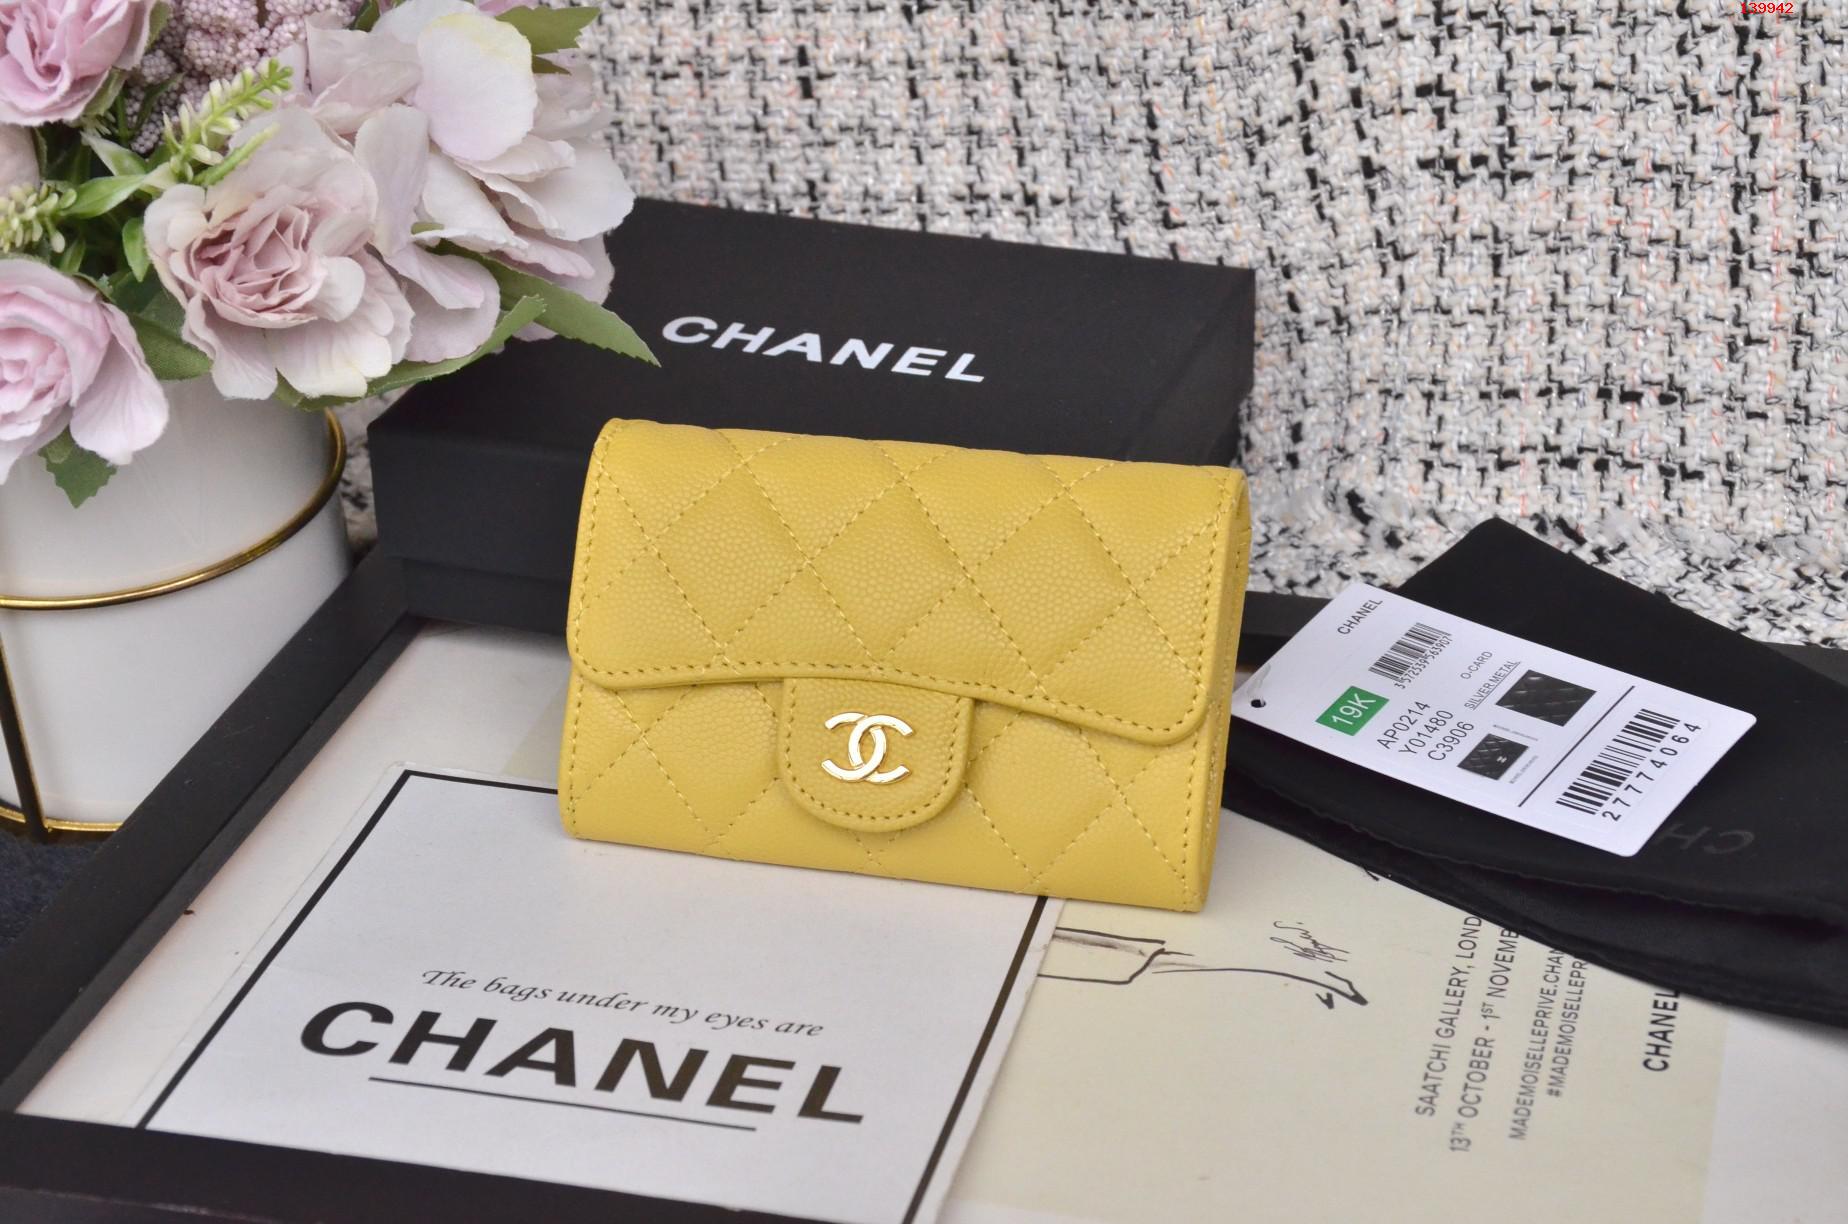 高仿香奈儿钱夹,香奈儿钱夹,高仿香奈儿,Chanel